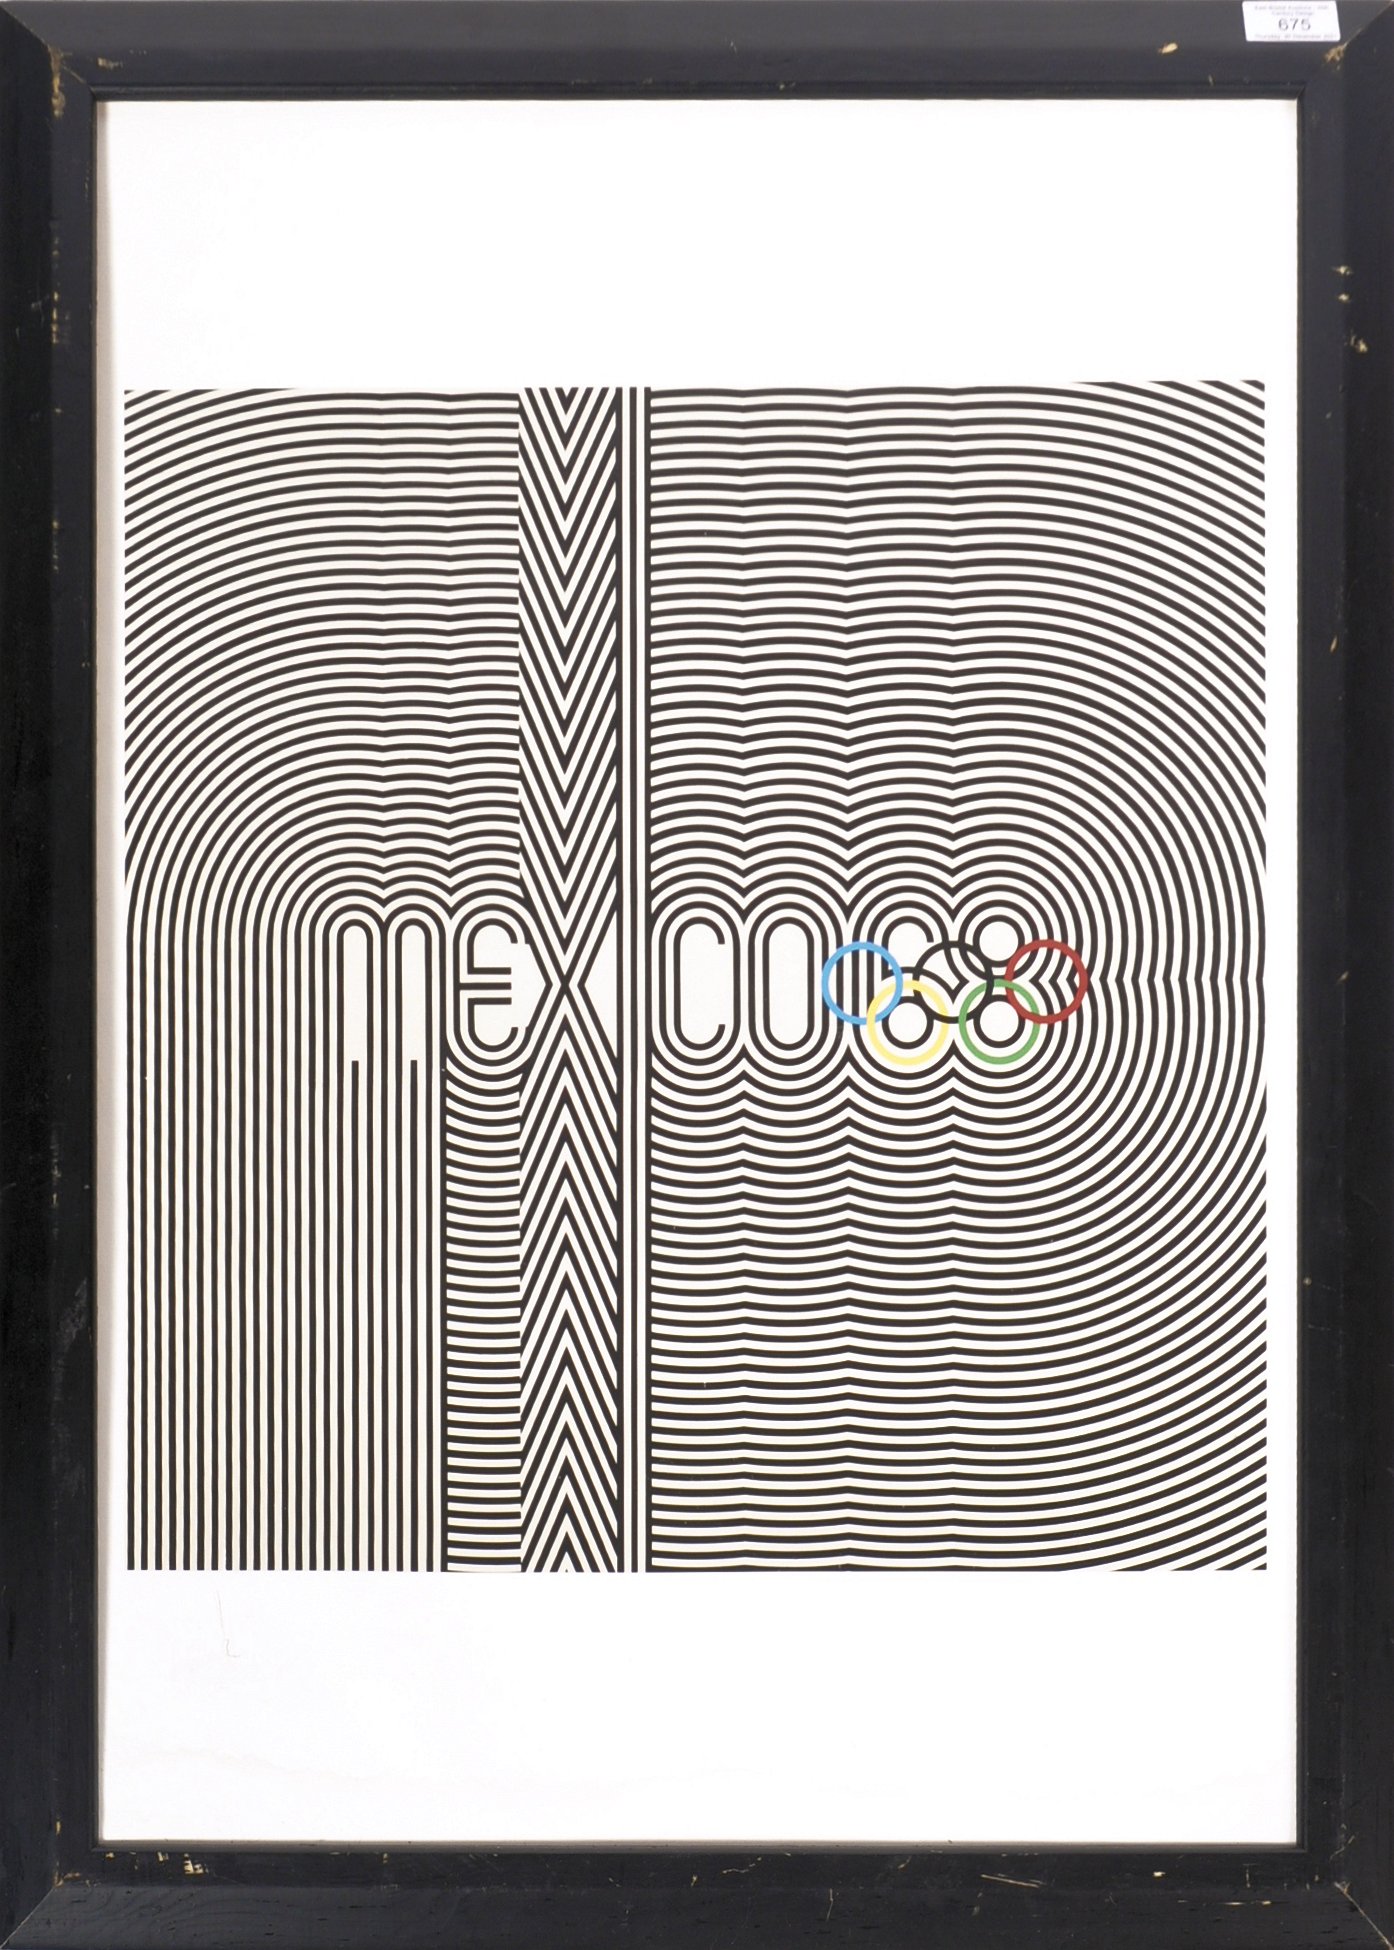 ORIGINAL MEXICO 1968 OLYMPICS POSTER DESIGNED BY WYMAN & VAZQUEZ